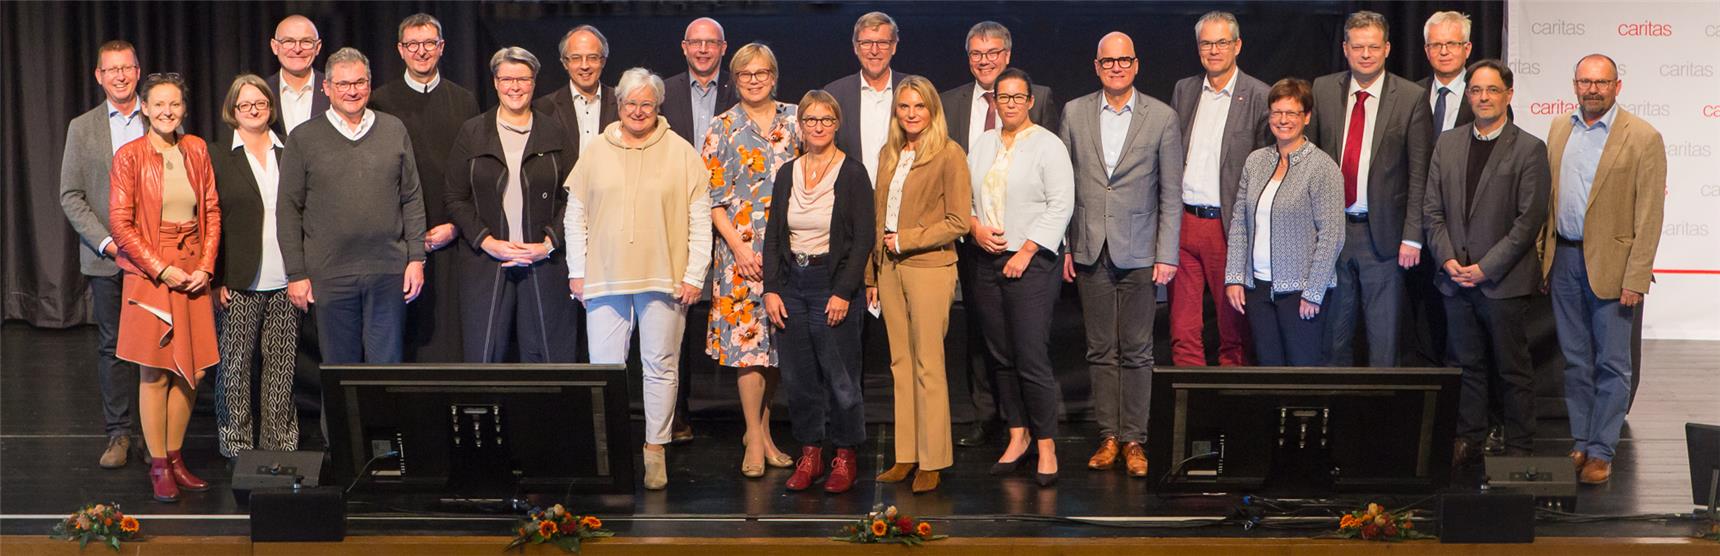 Die Mitglieder des Caritasrates des Deutschen Caritasverbandes auf der Bühne der Stadthalle in Limburg